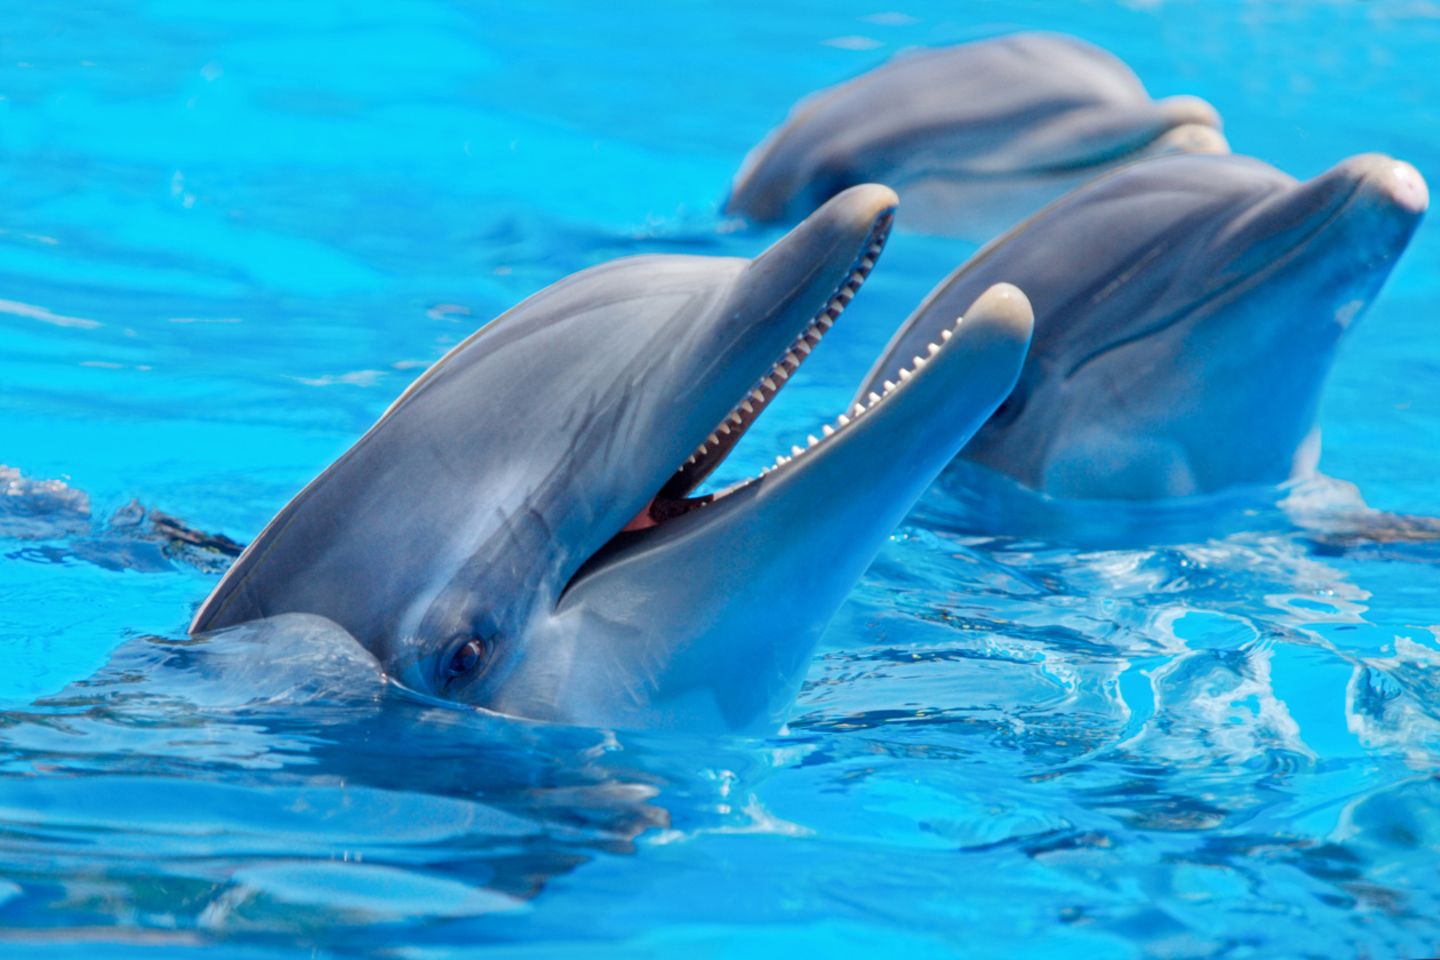 Delfine lieben Gesellschaft - und sie kommunizieren untereinander, etwa, indem sie sich gegenseitig beim Namen rufen